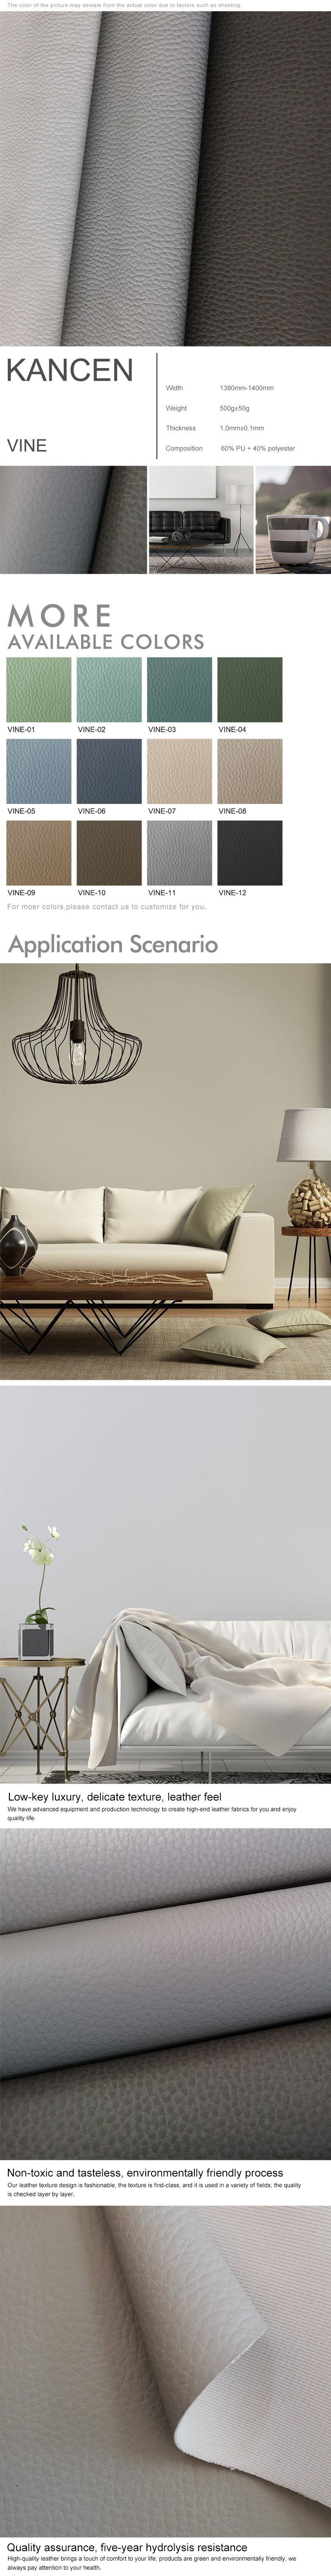 DMF free sofa PU Manufacturer - KANCEN